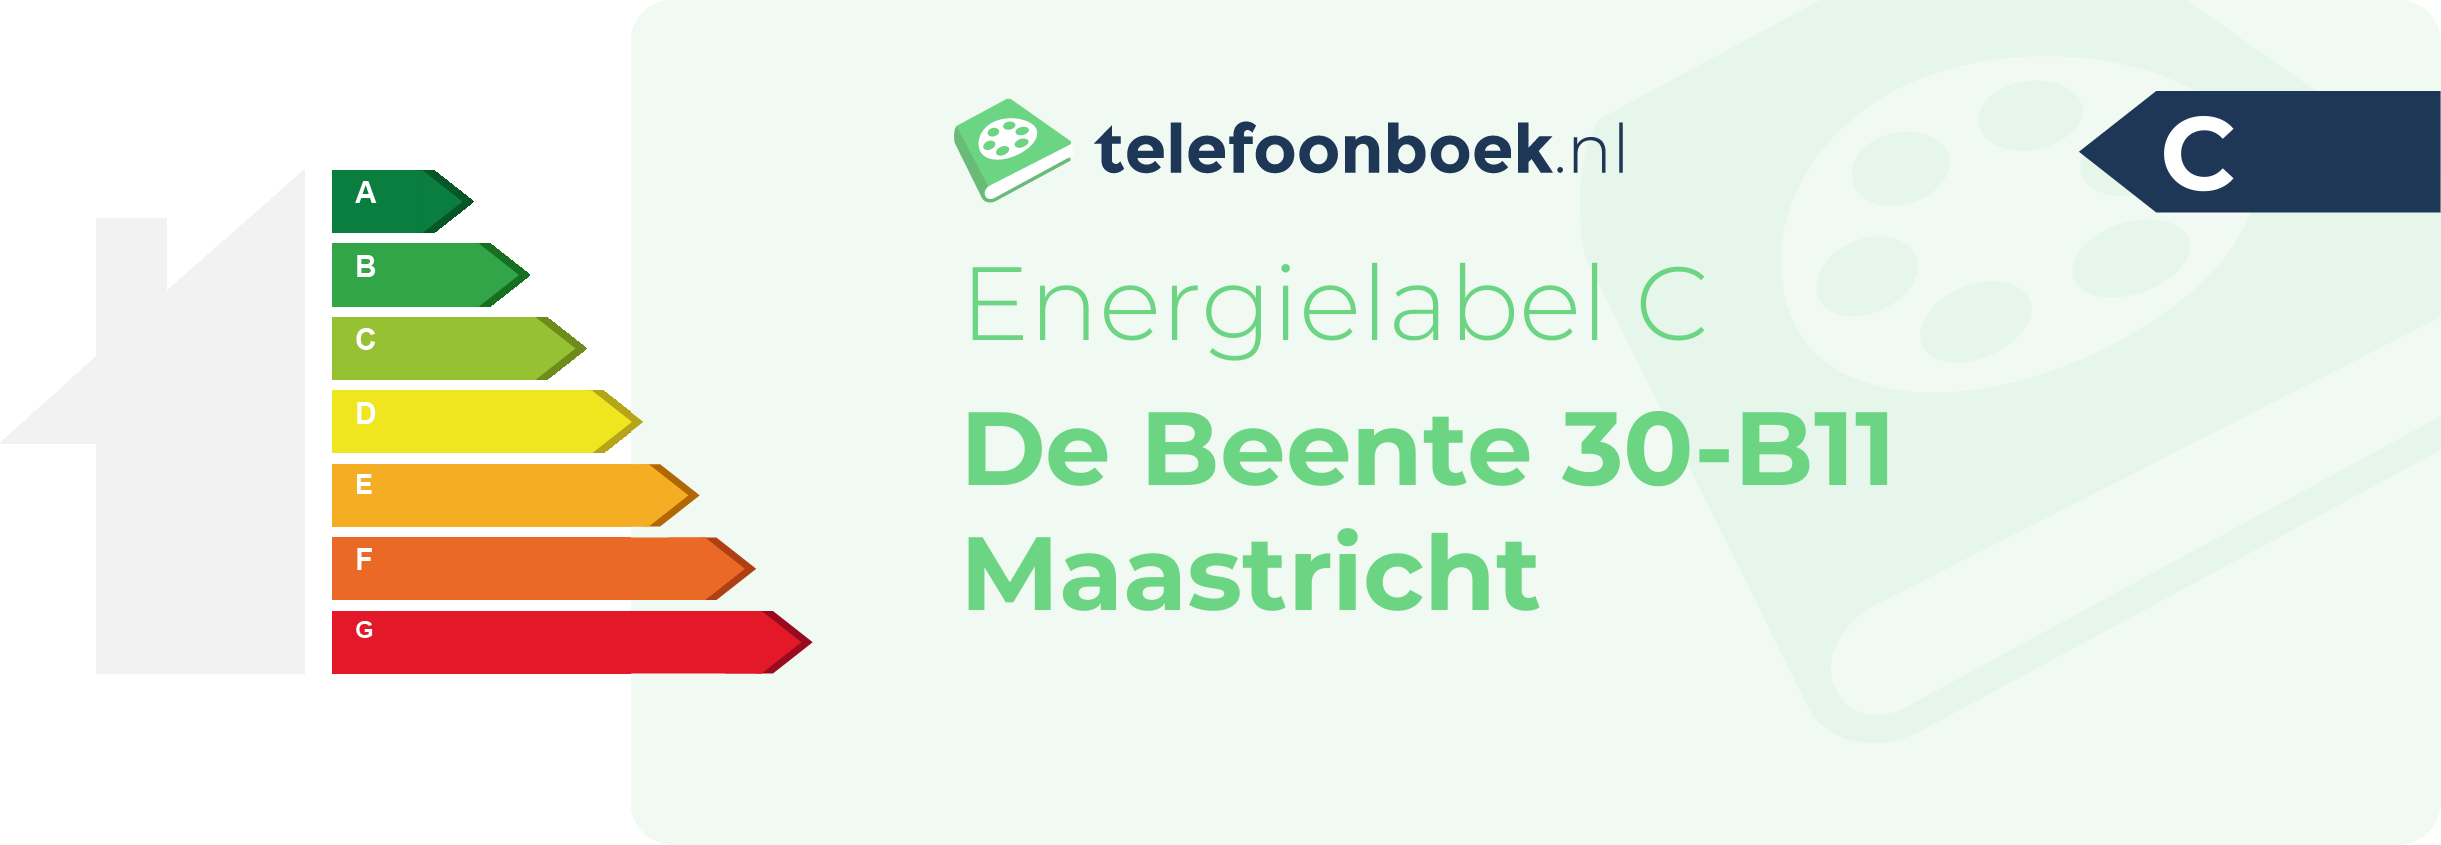 Energielabel De Beente 30-B11 Maastricht